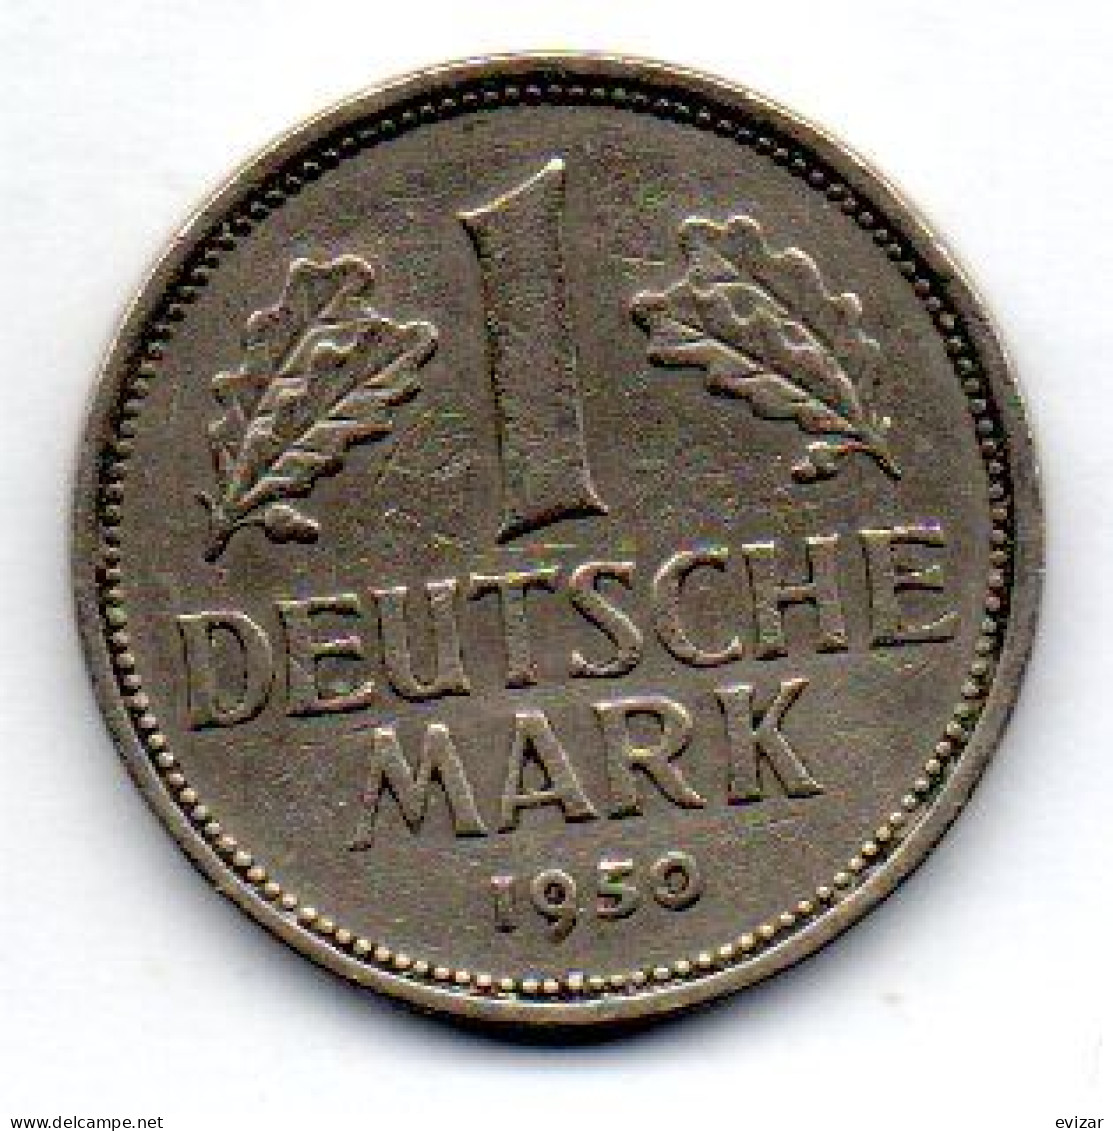 GERMANY - FEDERAL REPUBLIC, 1 Mark, Copper-Nickel, Year 1950-J, KM # 110 - 1 Mark